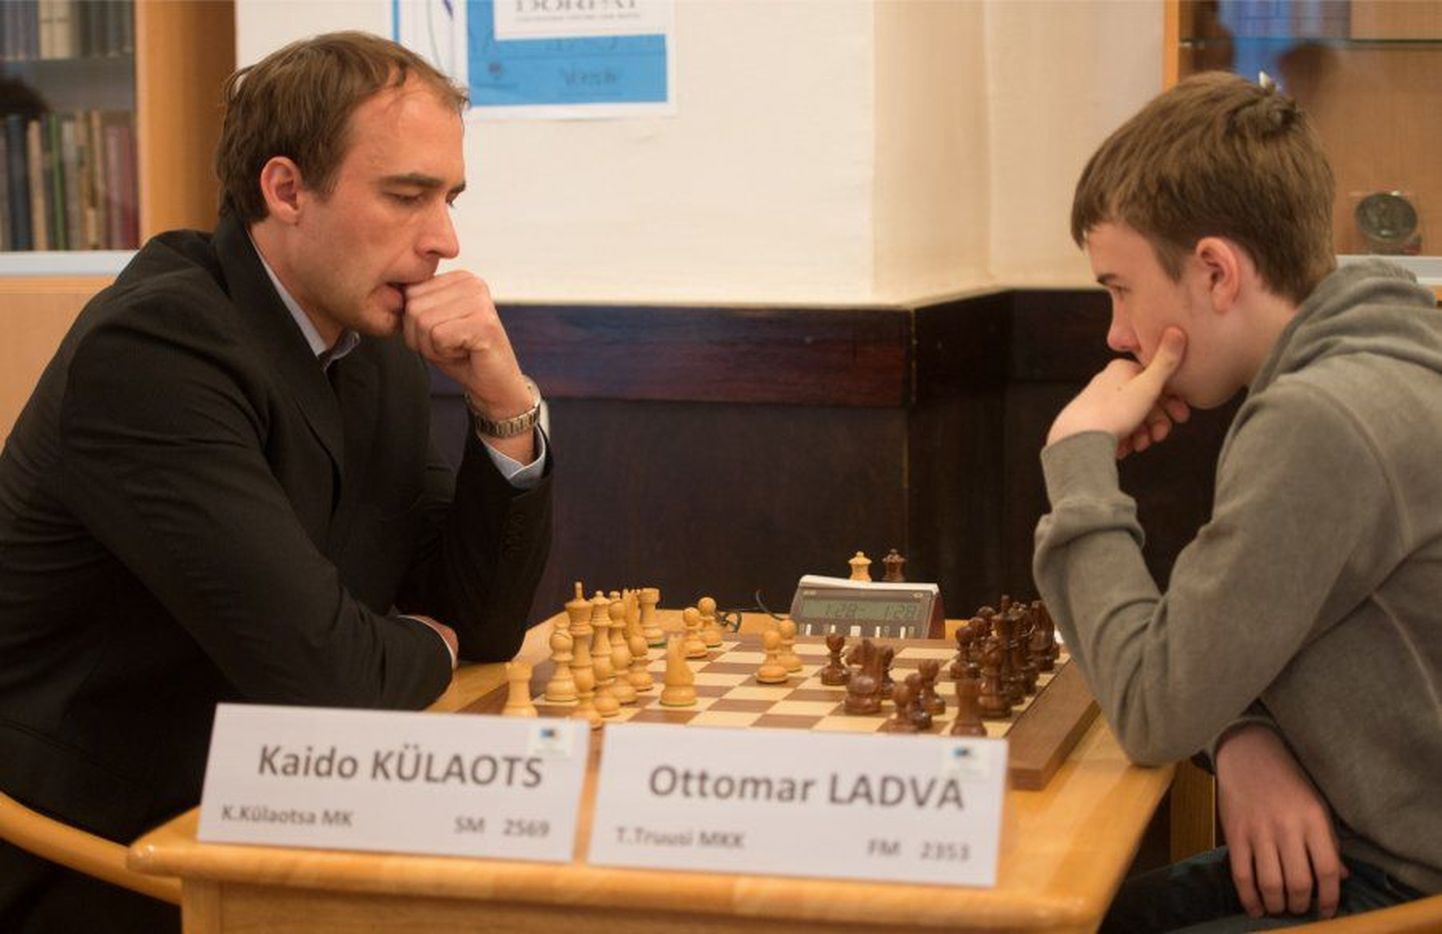 Õpetaja Kaido Külaots ja õpilane Ottomar Ladva mängivad tihti ka teineteise vastu.